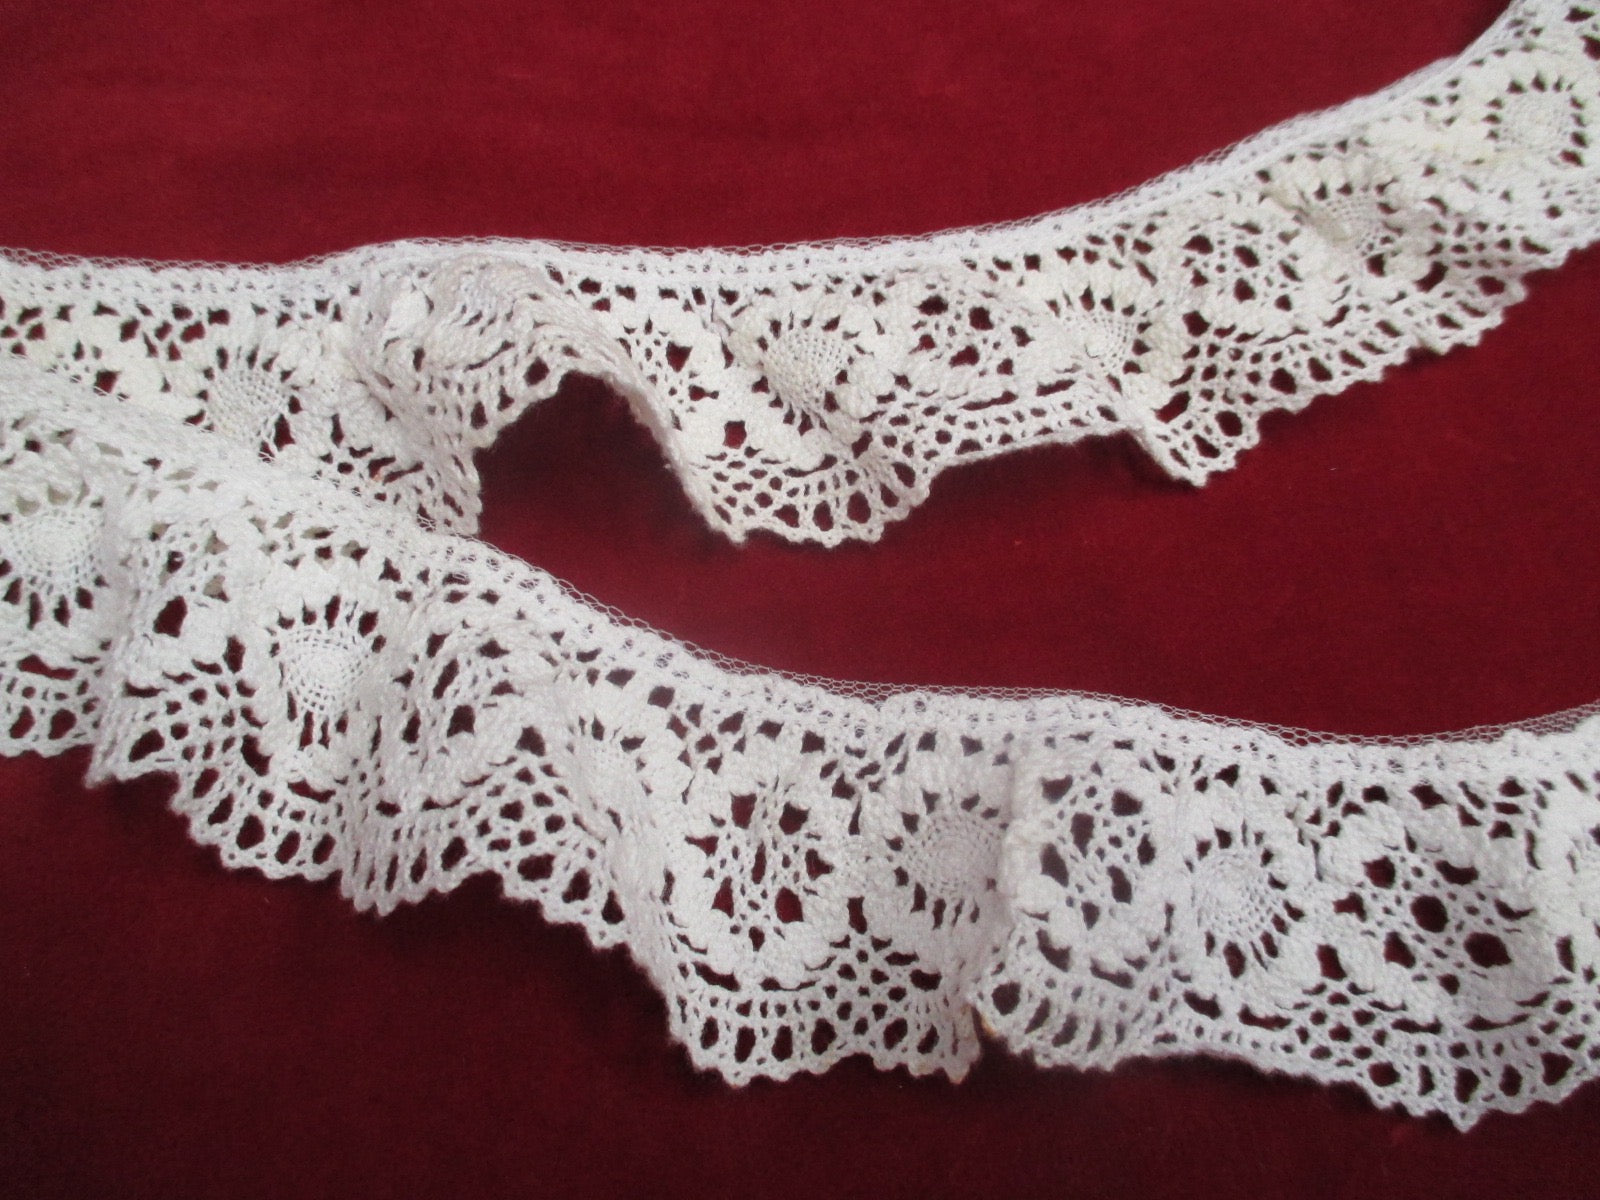 Antique Victorian Crochet lace piece